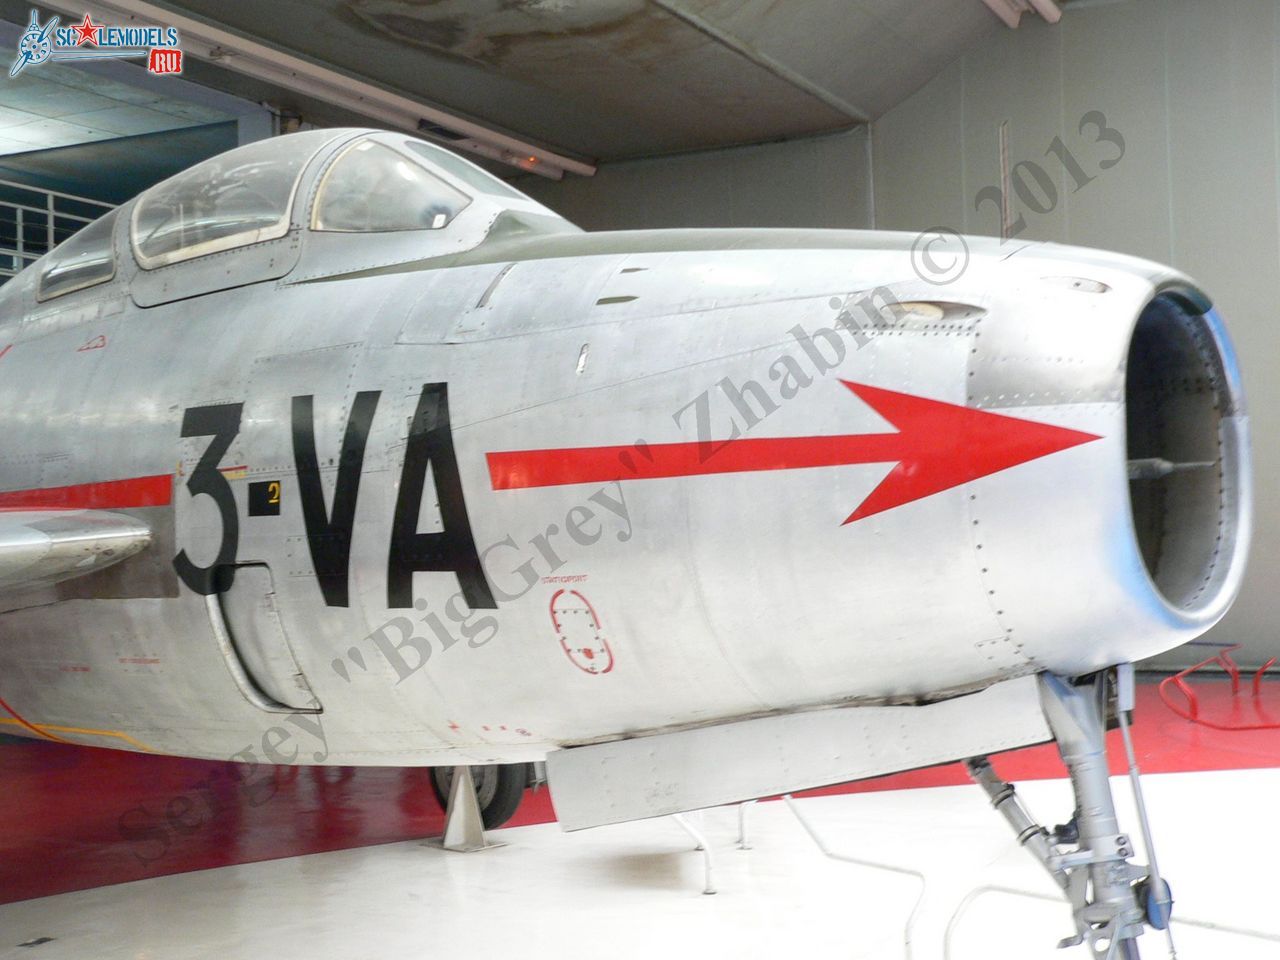 F-84F Thunderstreak_11.JPG